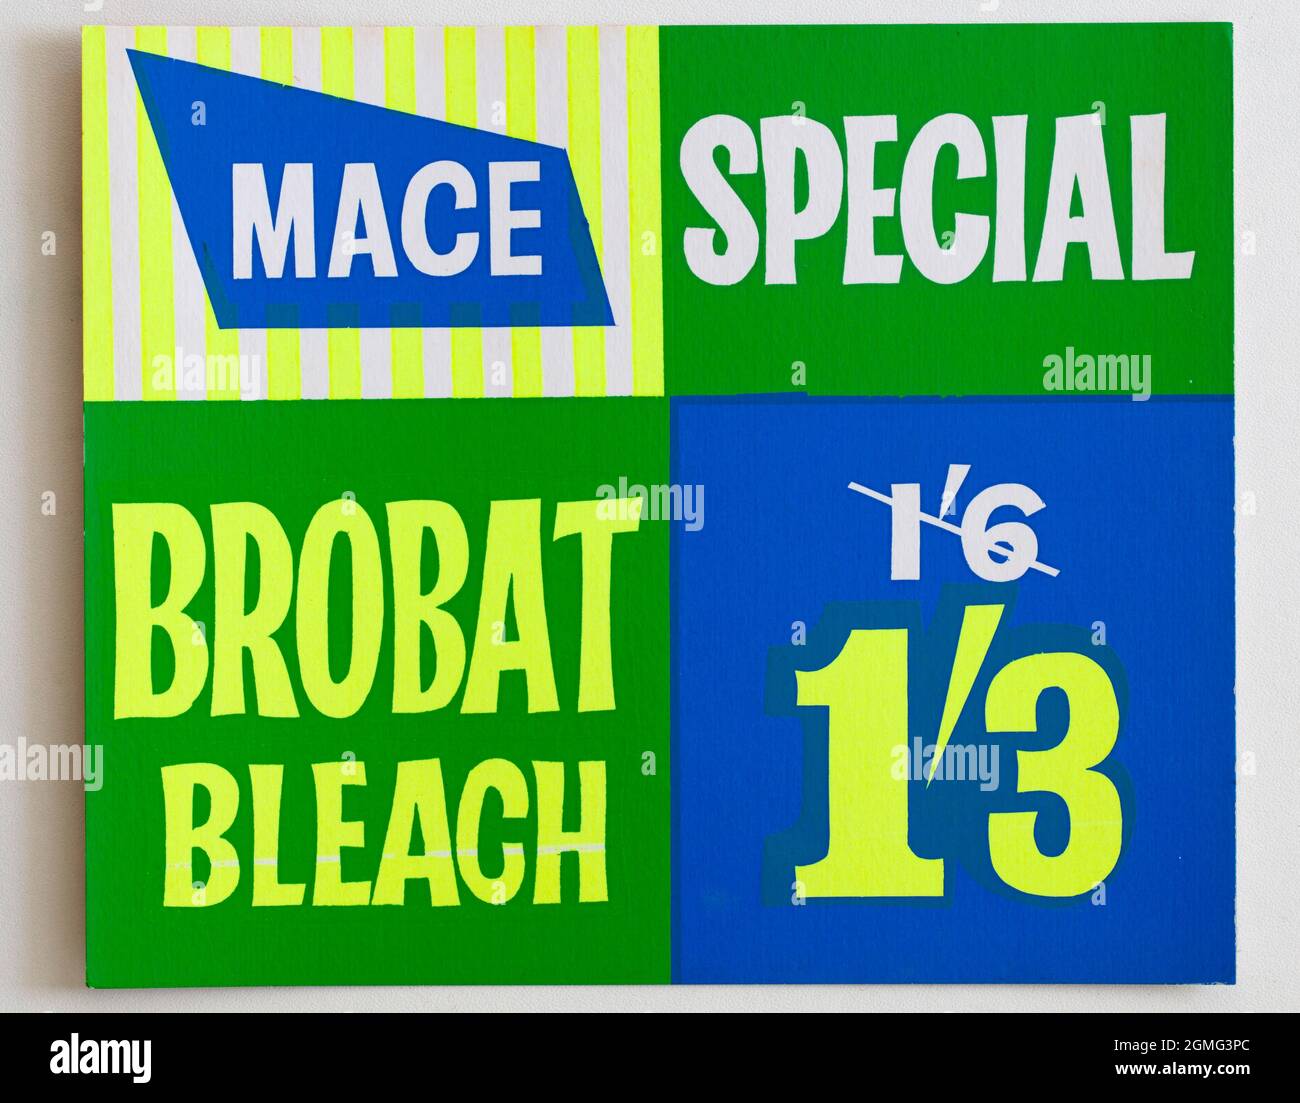 Vintage 60s Mace Shop Preisauszeige-Karte - Brobat Bleach Stockfoto